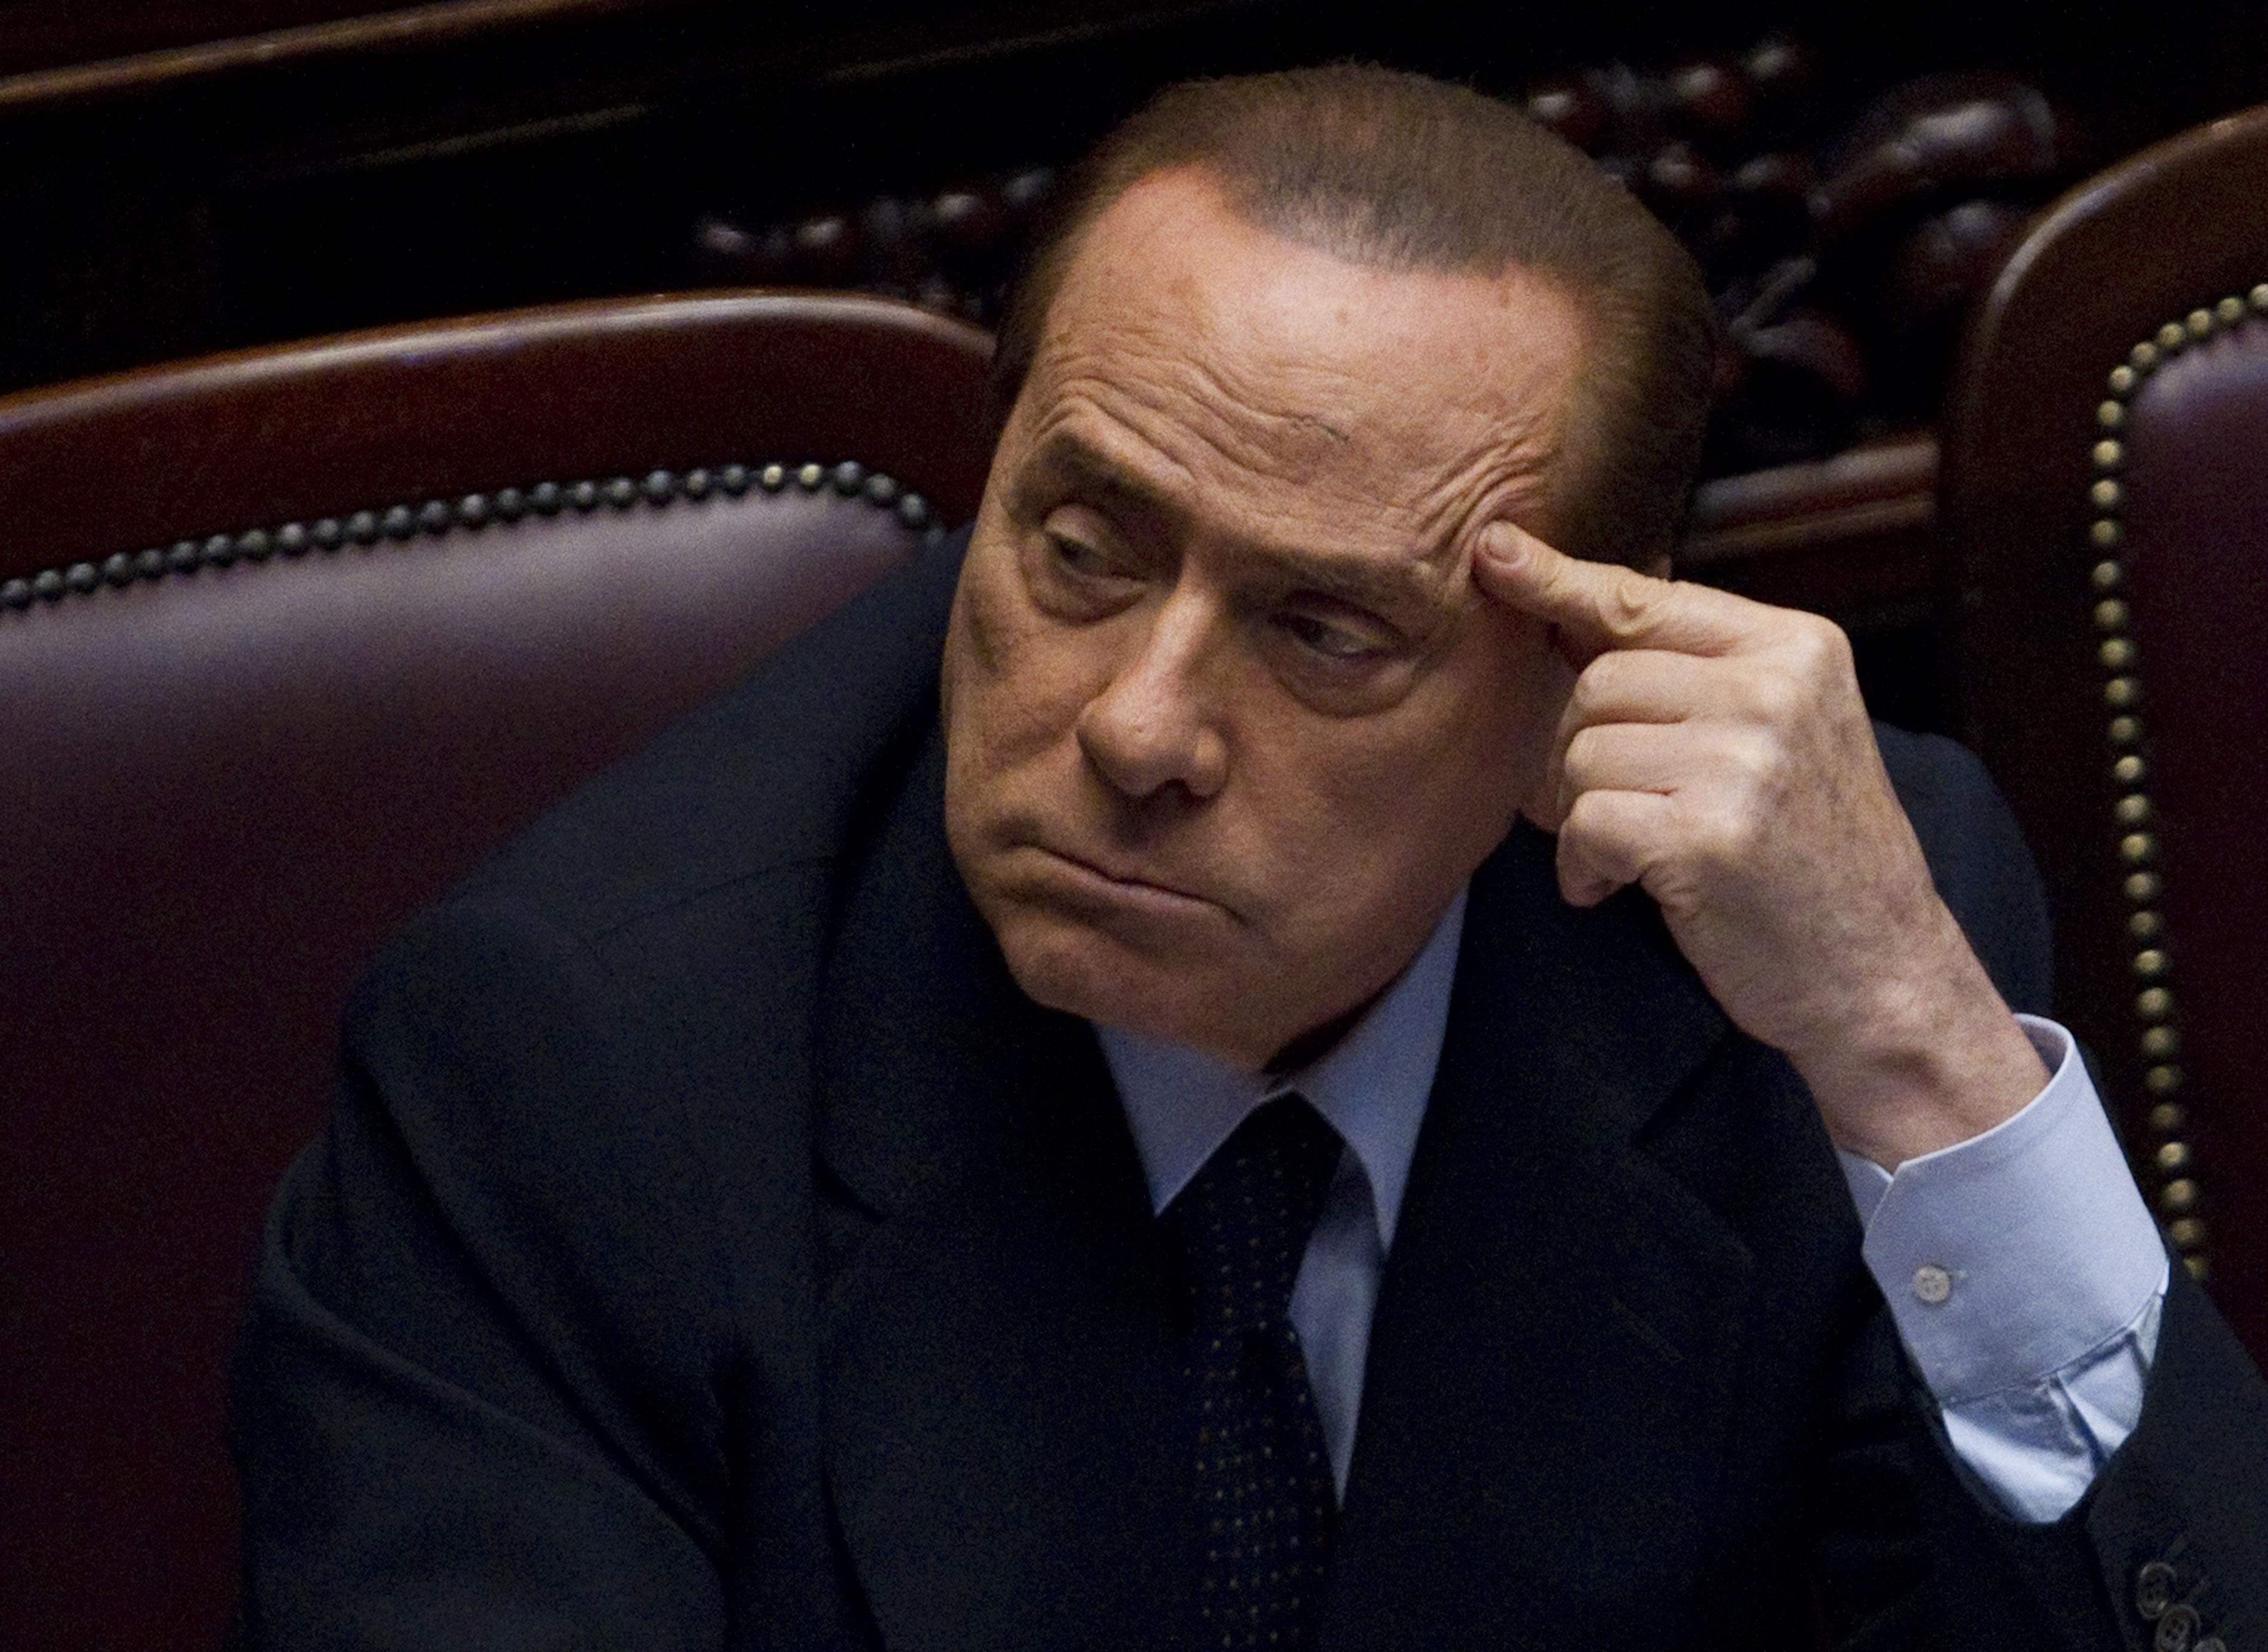 Utpressning, Sexualbrott, Italien, Silvio Berlusconi, Prostitution, Sex- och samlevnad, Politik, Berlusconi, Brott och straff, Köp av sexuell tjänst